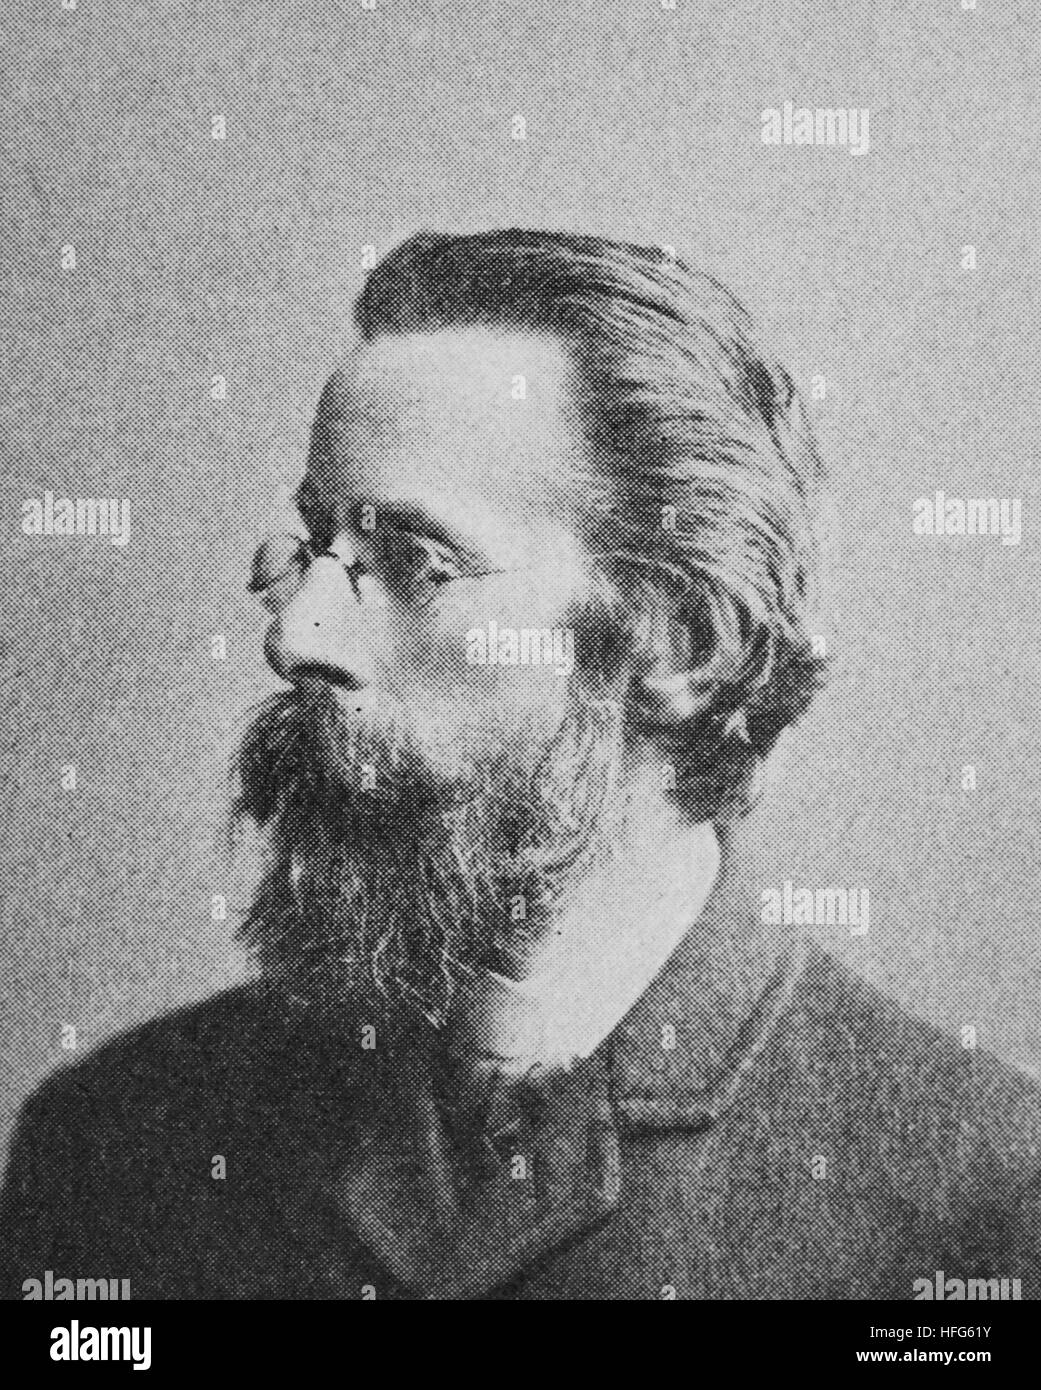 Picot de Peccaduc, Heinrich Freiherr von Herzogenberg, 1843 - 1900, était un compositeur autrichien et chef d'orchestre issu d'une famille aristocratique française, reproduction photo de l'année 1895, l'amélioration numérique Banque D'Images